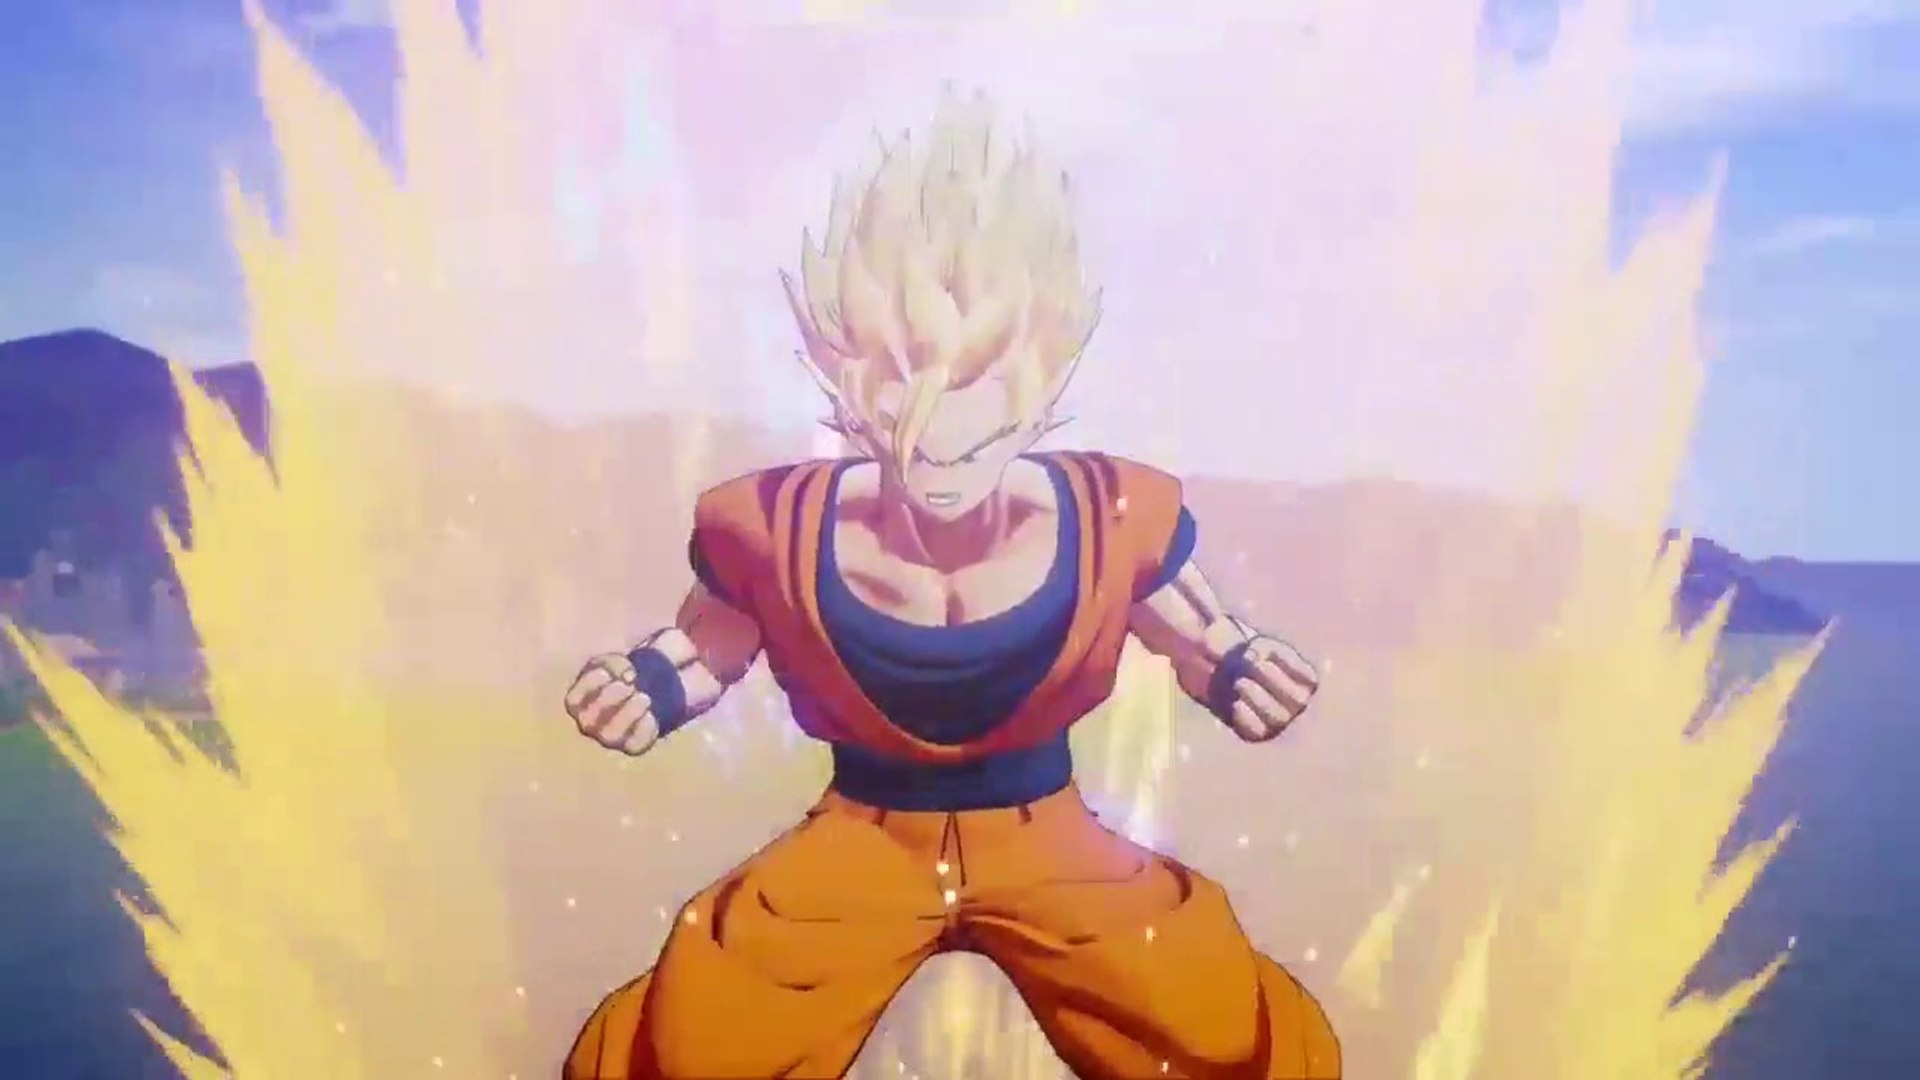 DBZ: Kakarot | Goku Super Saiyan 3 - Majin Buu Saga - video Dailymotion